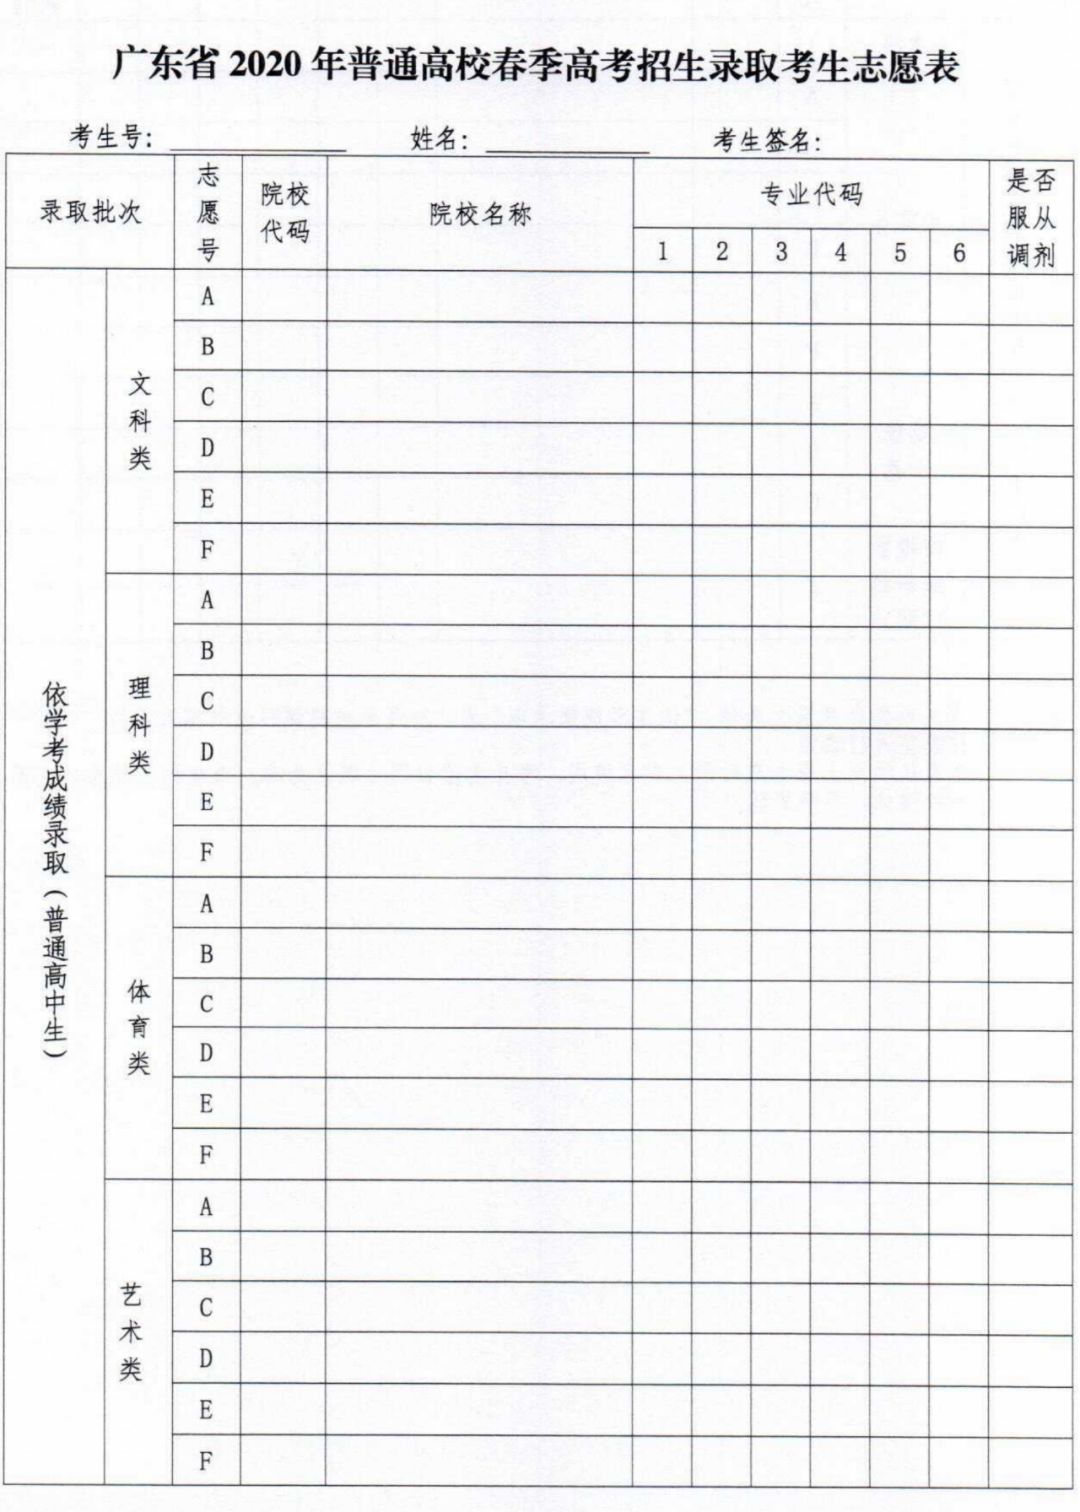 附件： 广东省2020年普通高校春季高考招生录取考生志愿表（样式）1.jpg